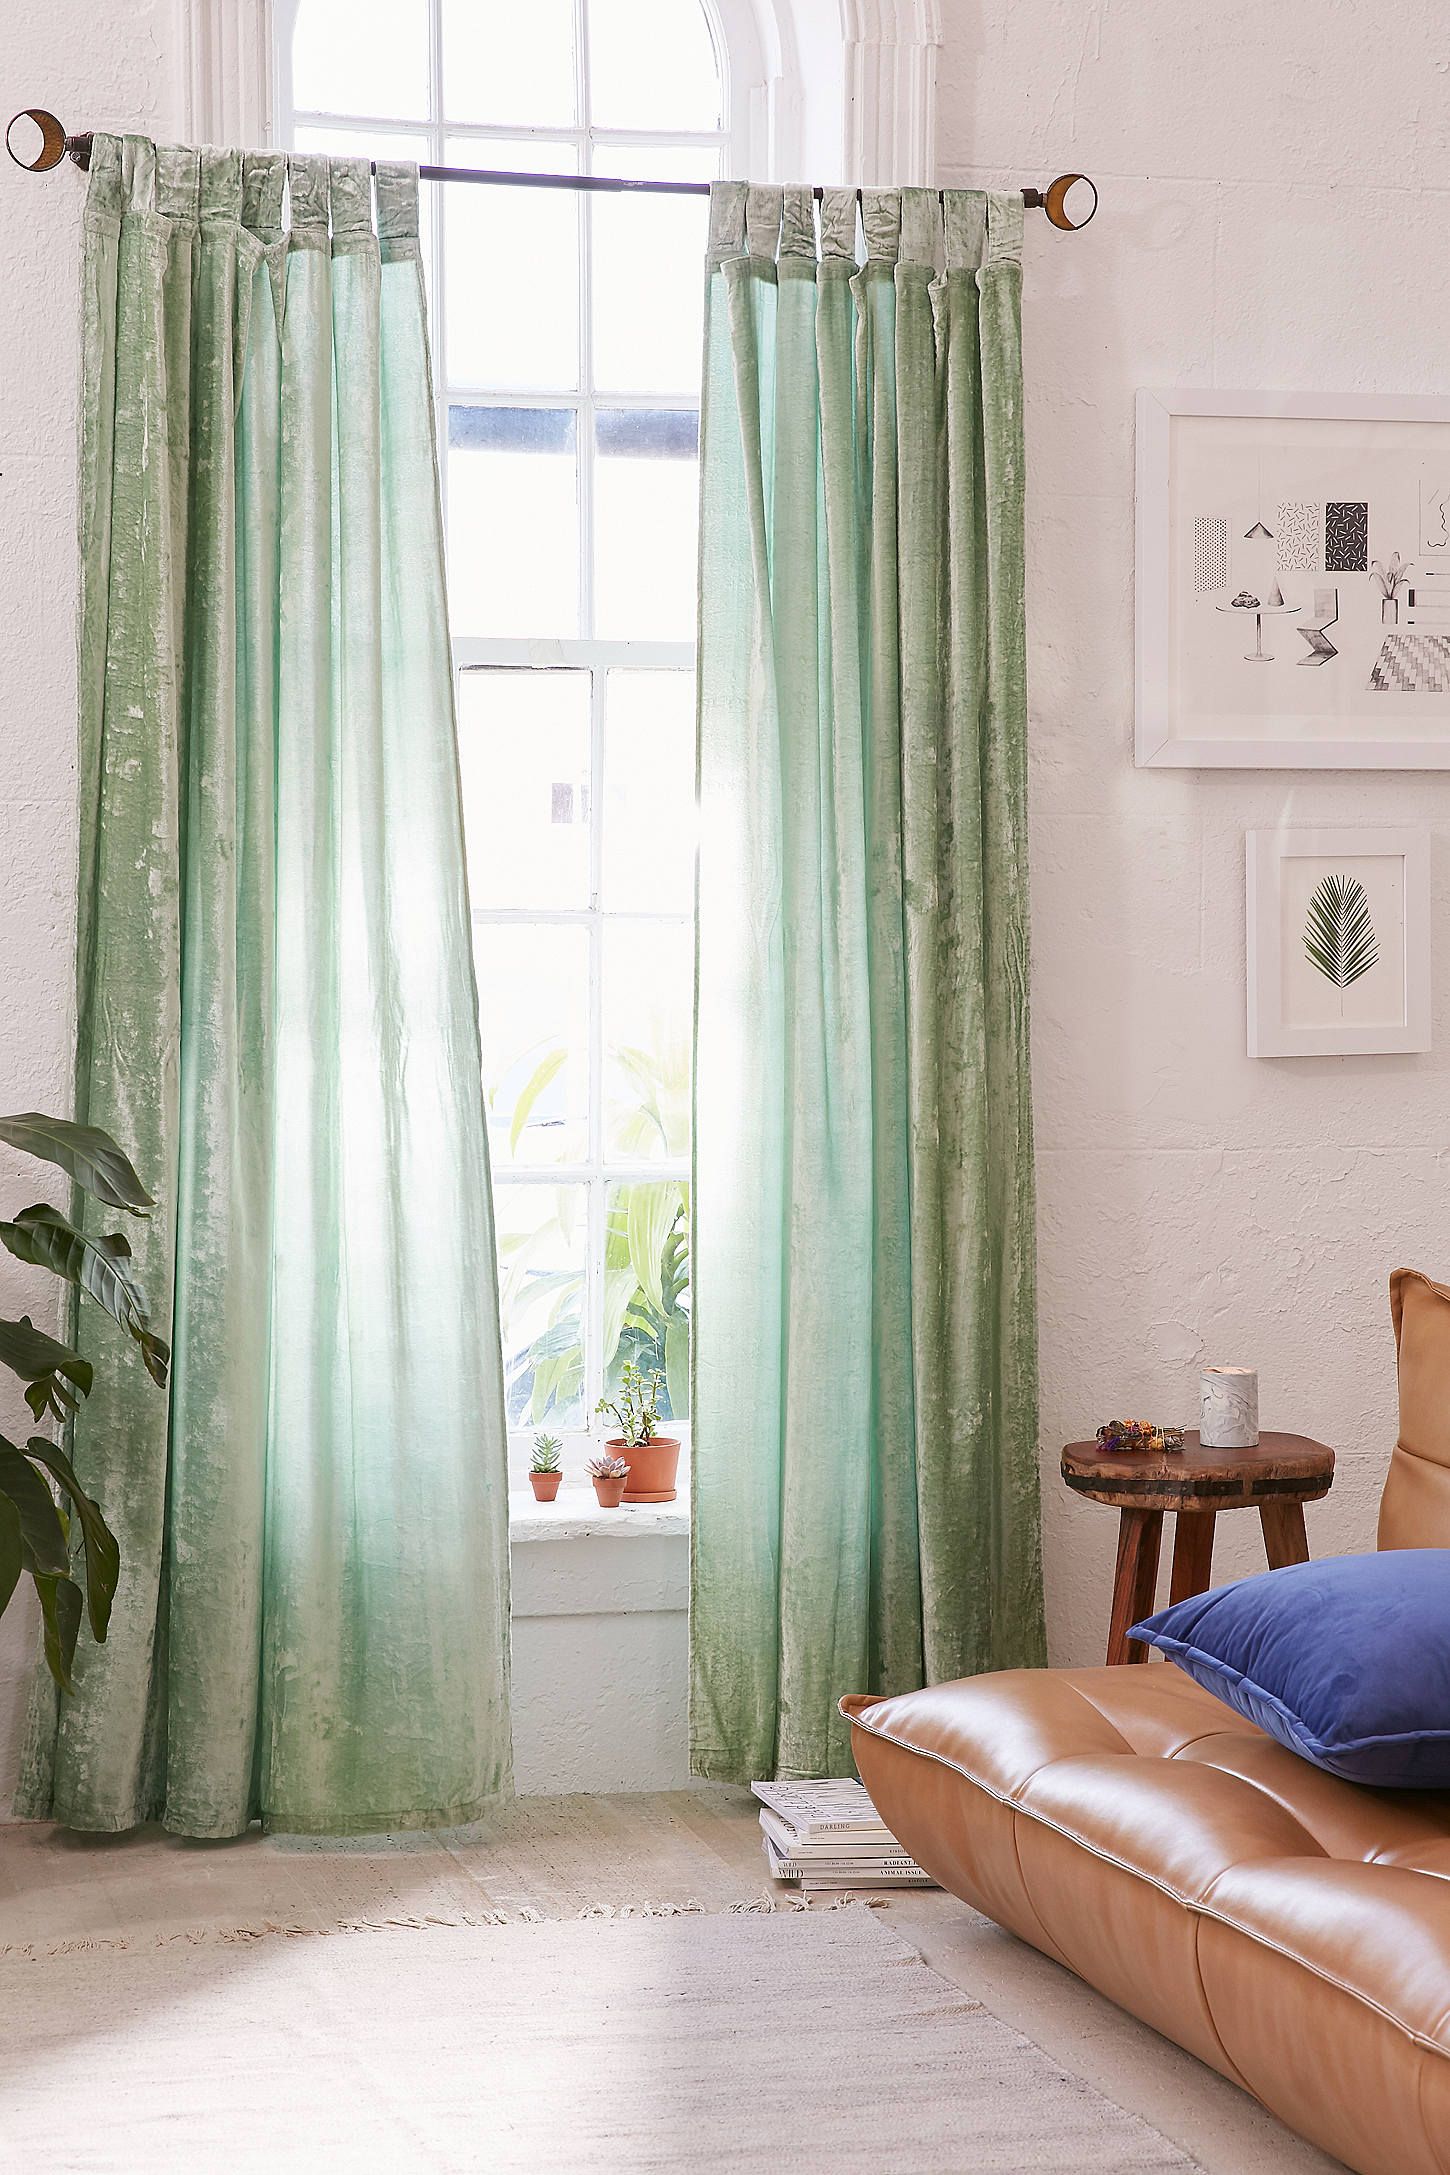 Rèm cửa cũng là một ý tưởng tuyệt vời để có thể thêm vào một “mảng nhung” nổi bật cho khung cửa sổ trở nên thơ mộng hơn với gam màu xanh bạc hà tươi mát.